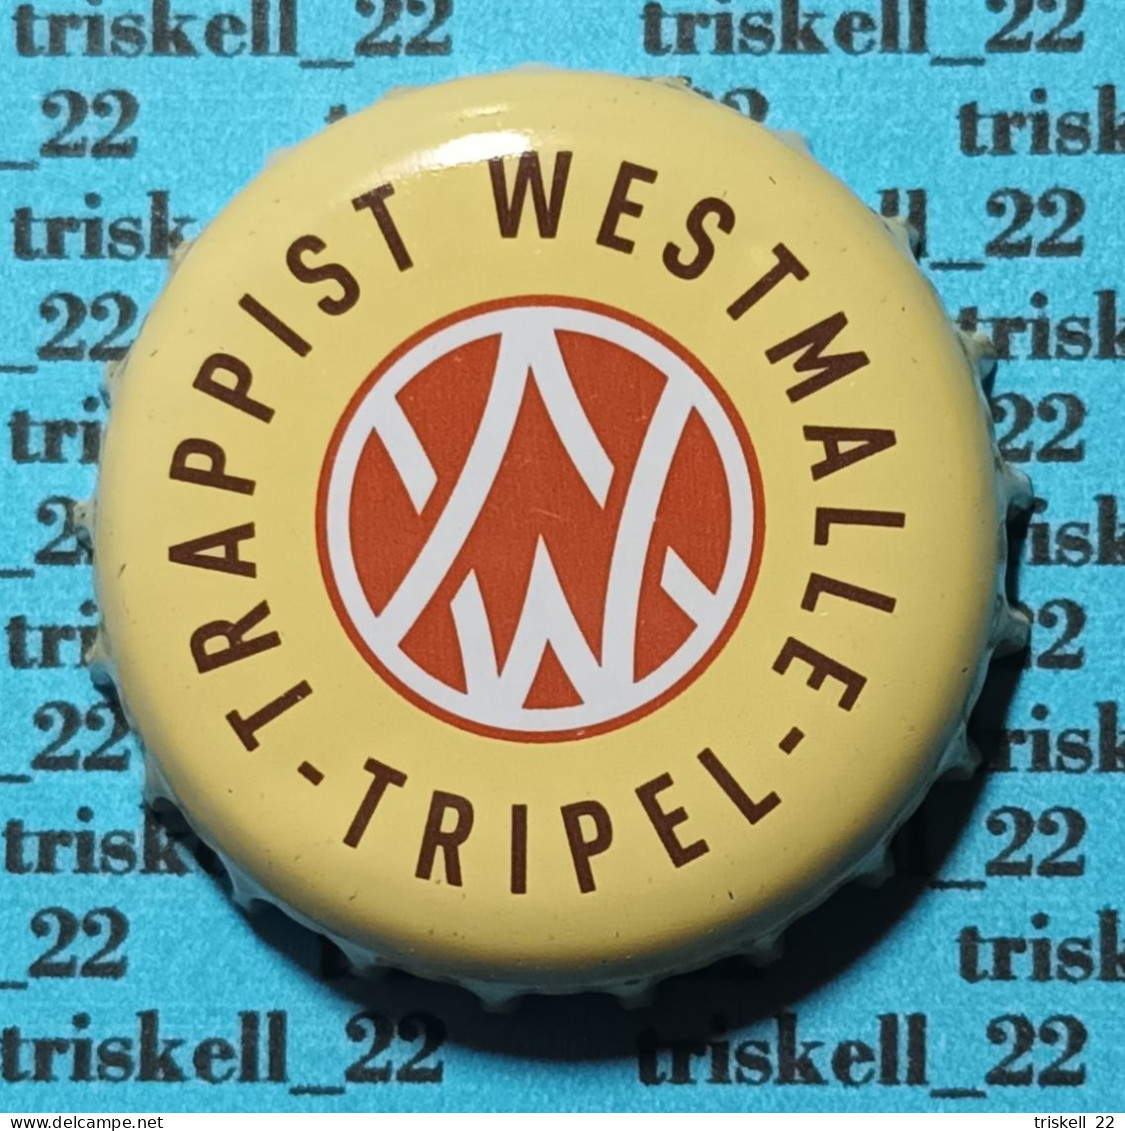 Trappist Westmalle Tripel    Mev14 - Beer